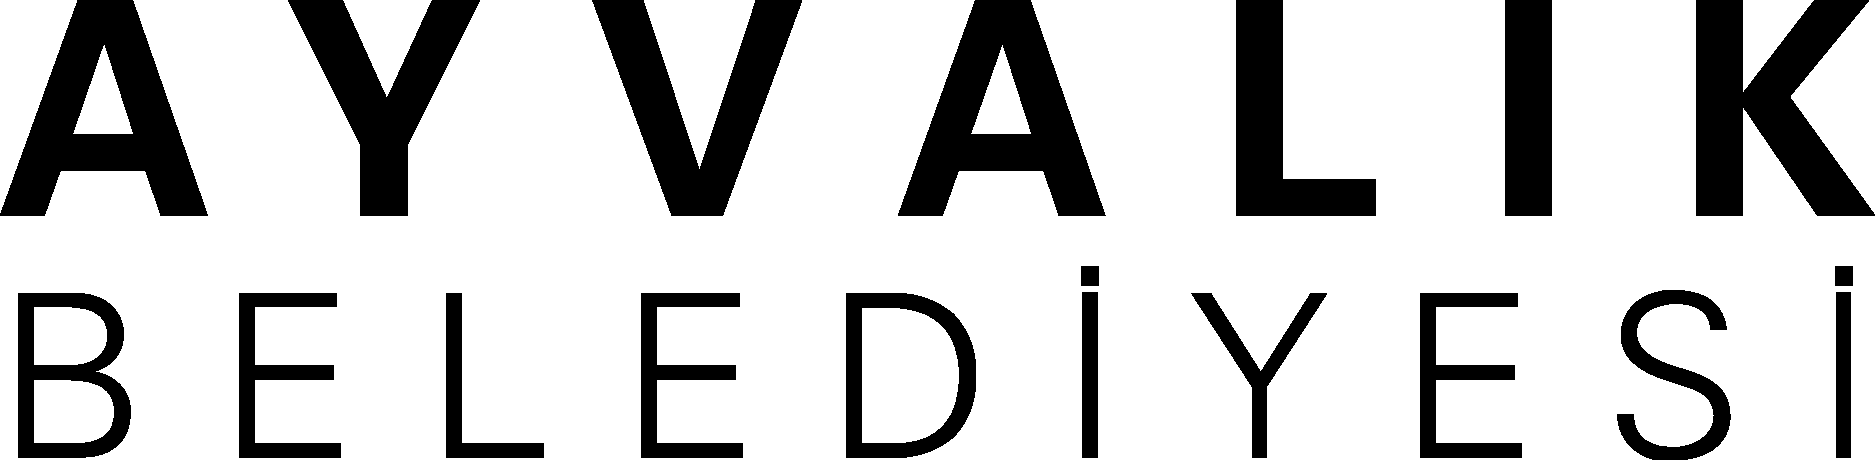 Ayvalık Belediyesi Wordmark Logo Vector